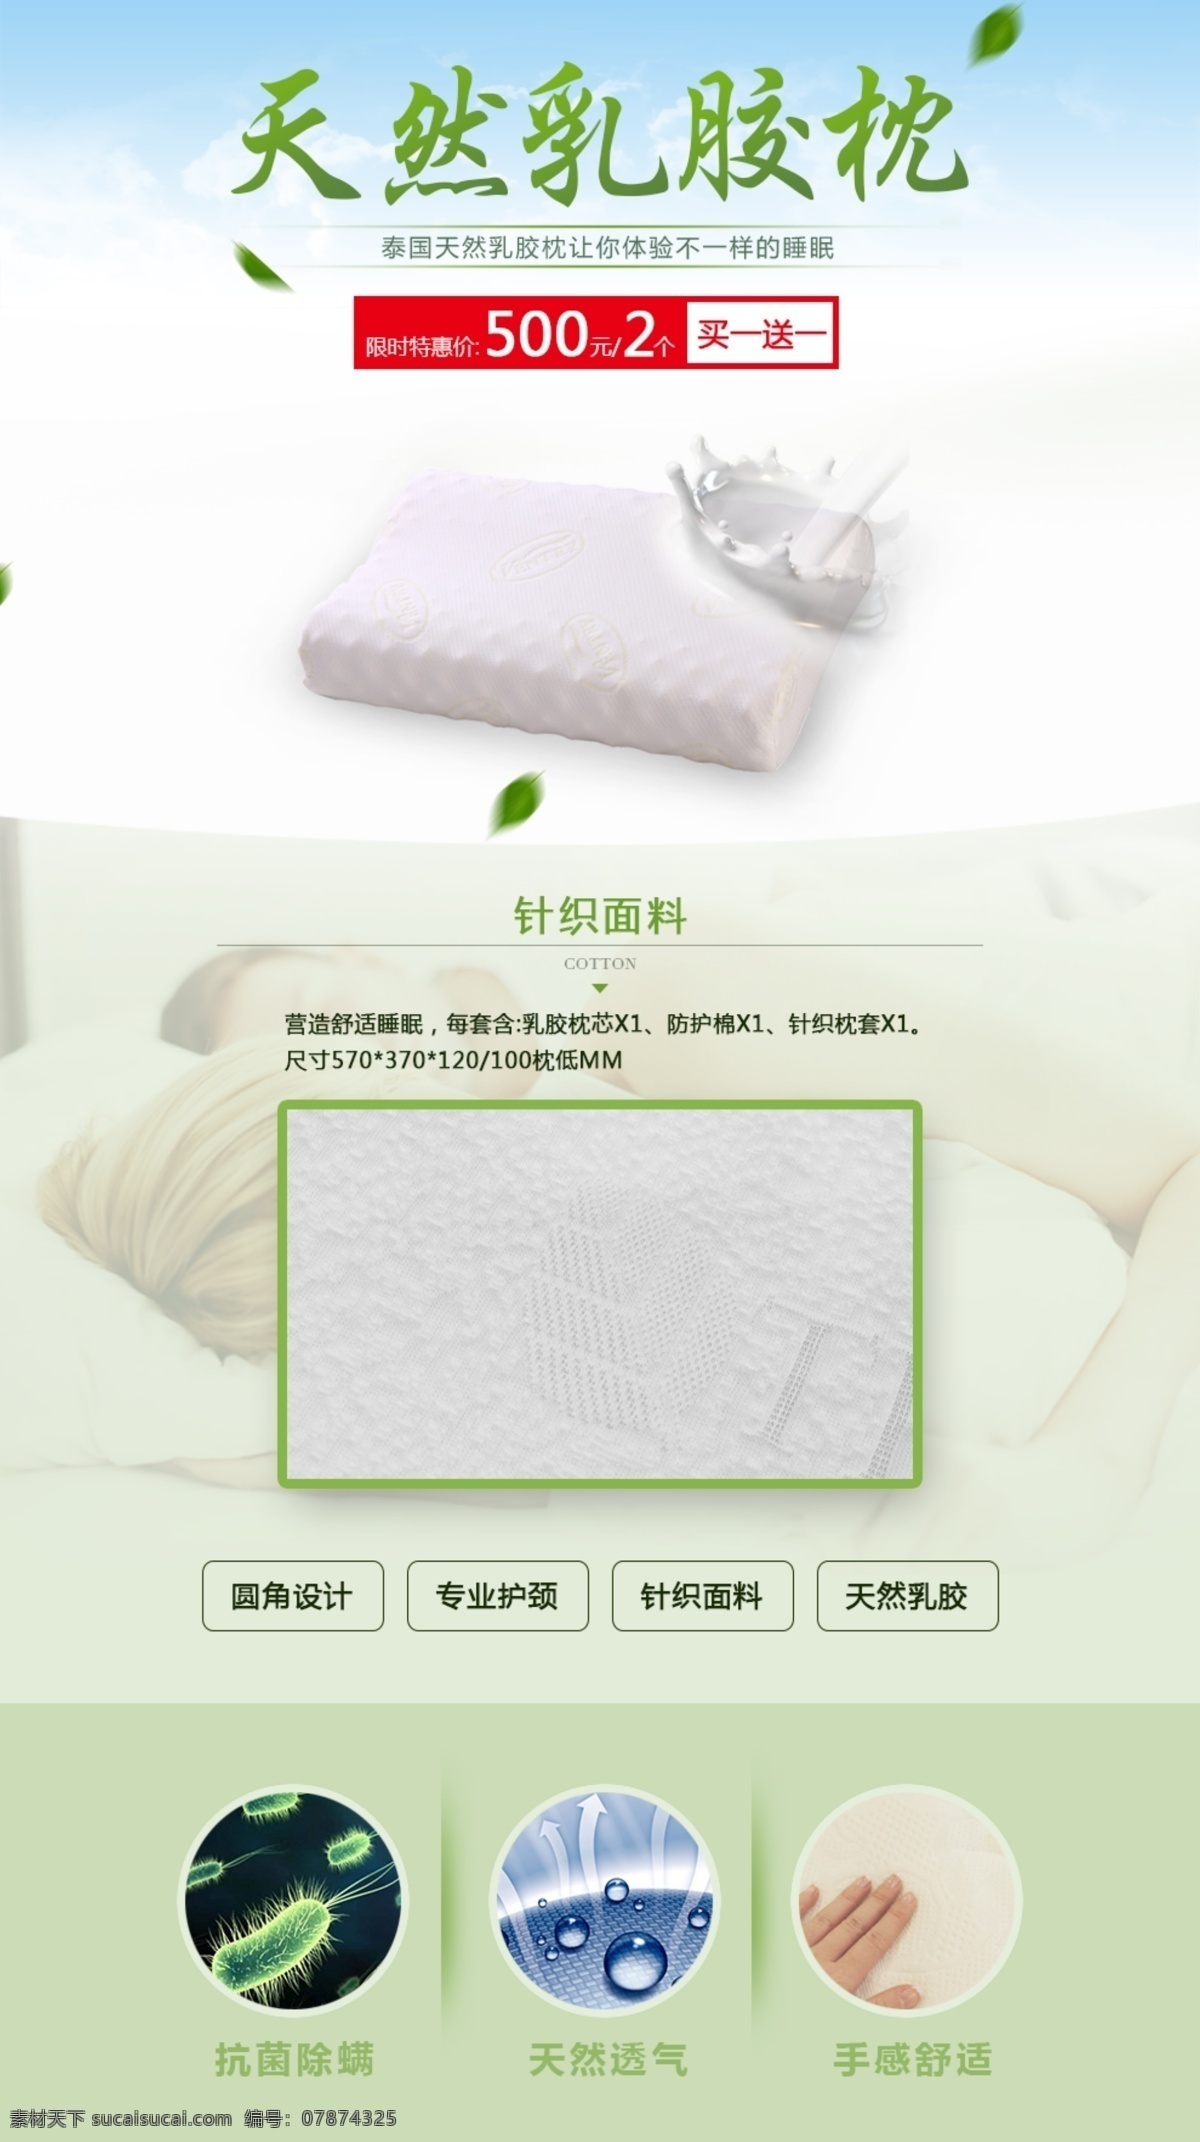 天然 乳胶 枕 促销 广告 乳胶枕 淘宝 平面 推广 宣传 产品推广 产品详情